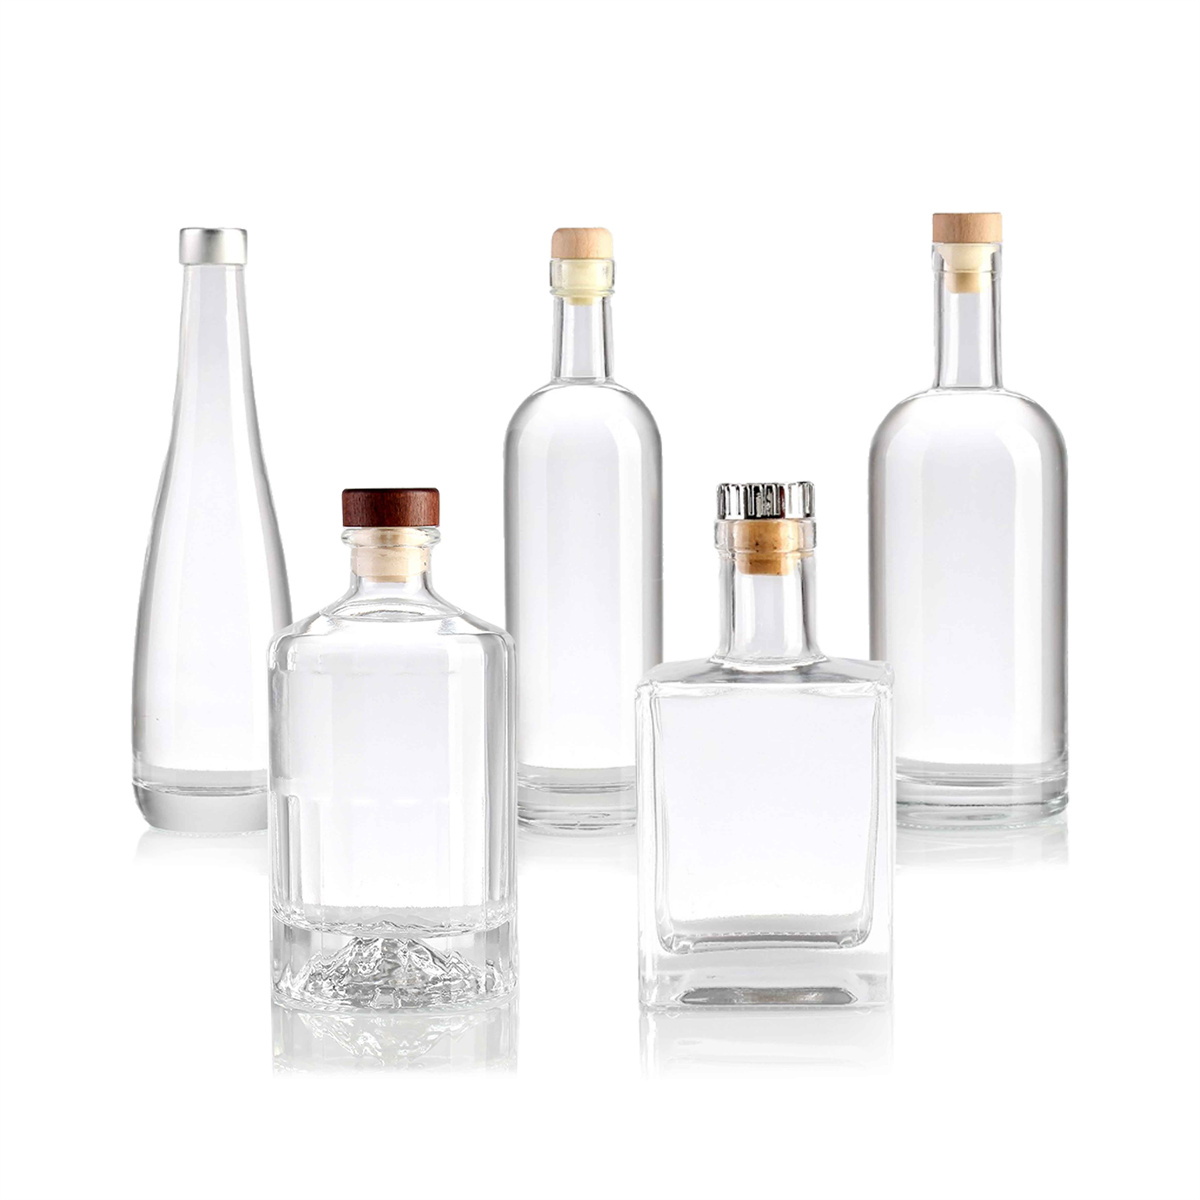 Glass bottle industry